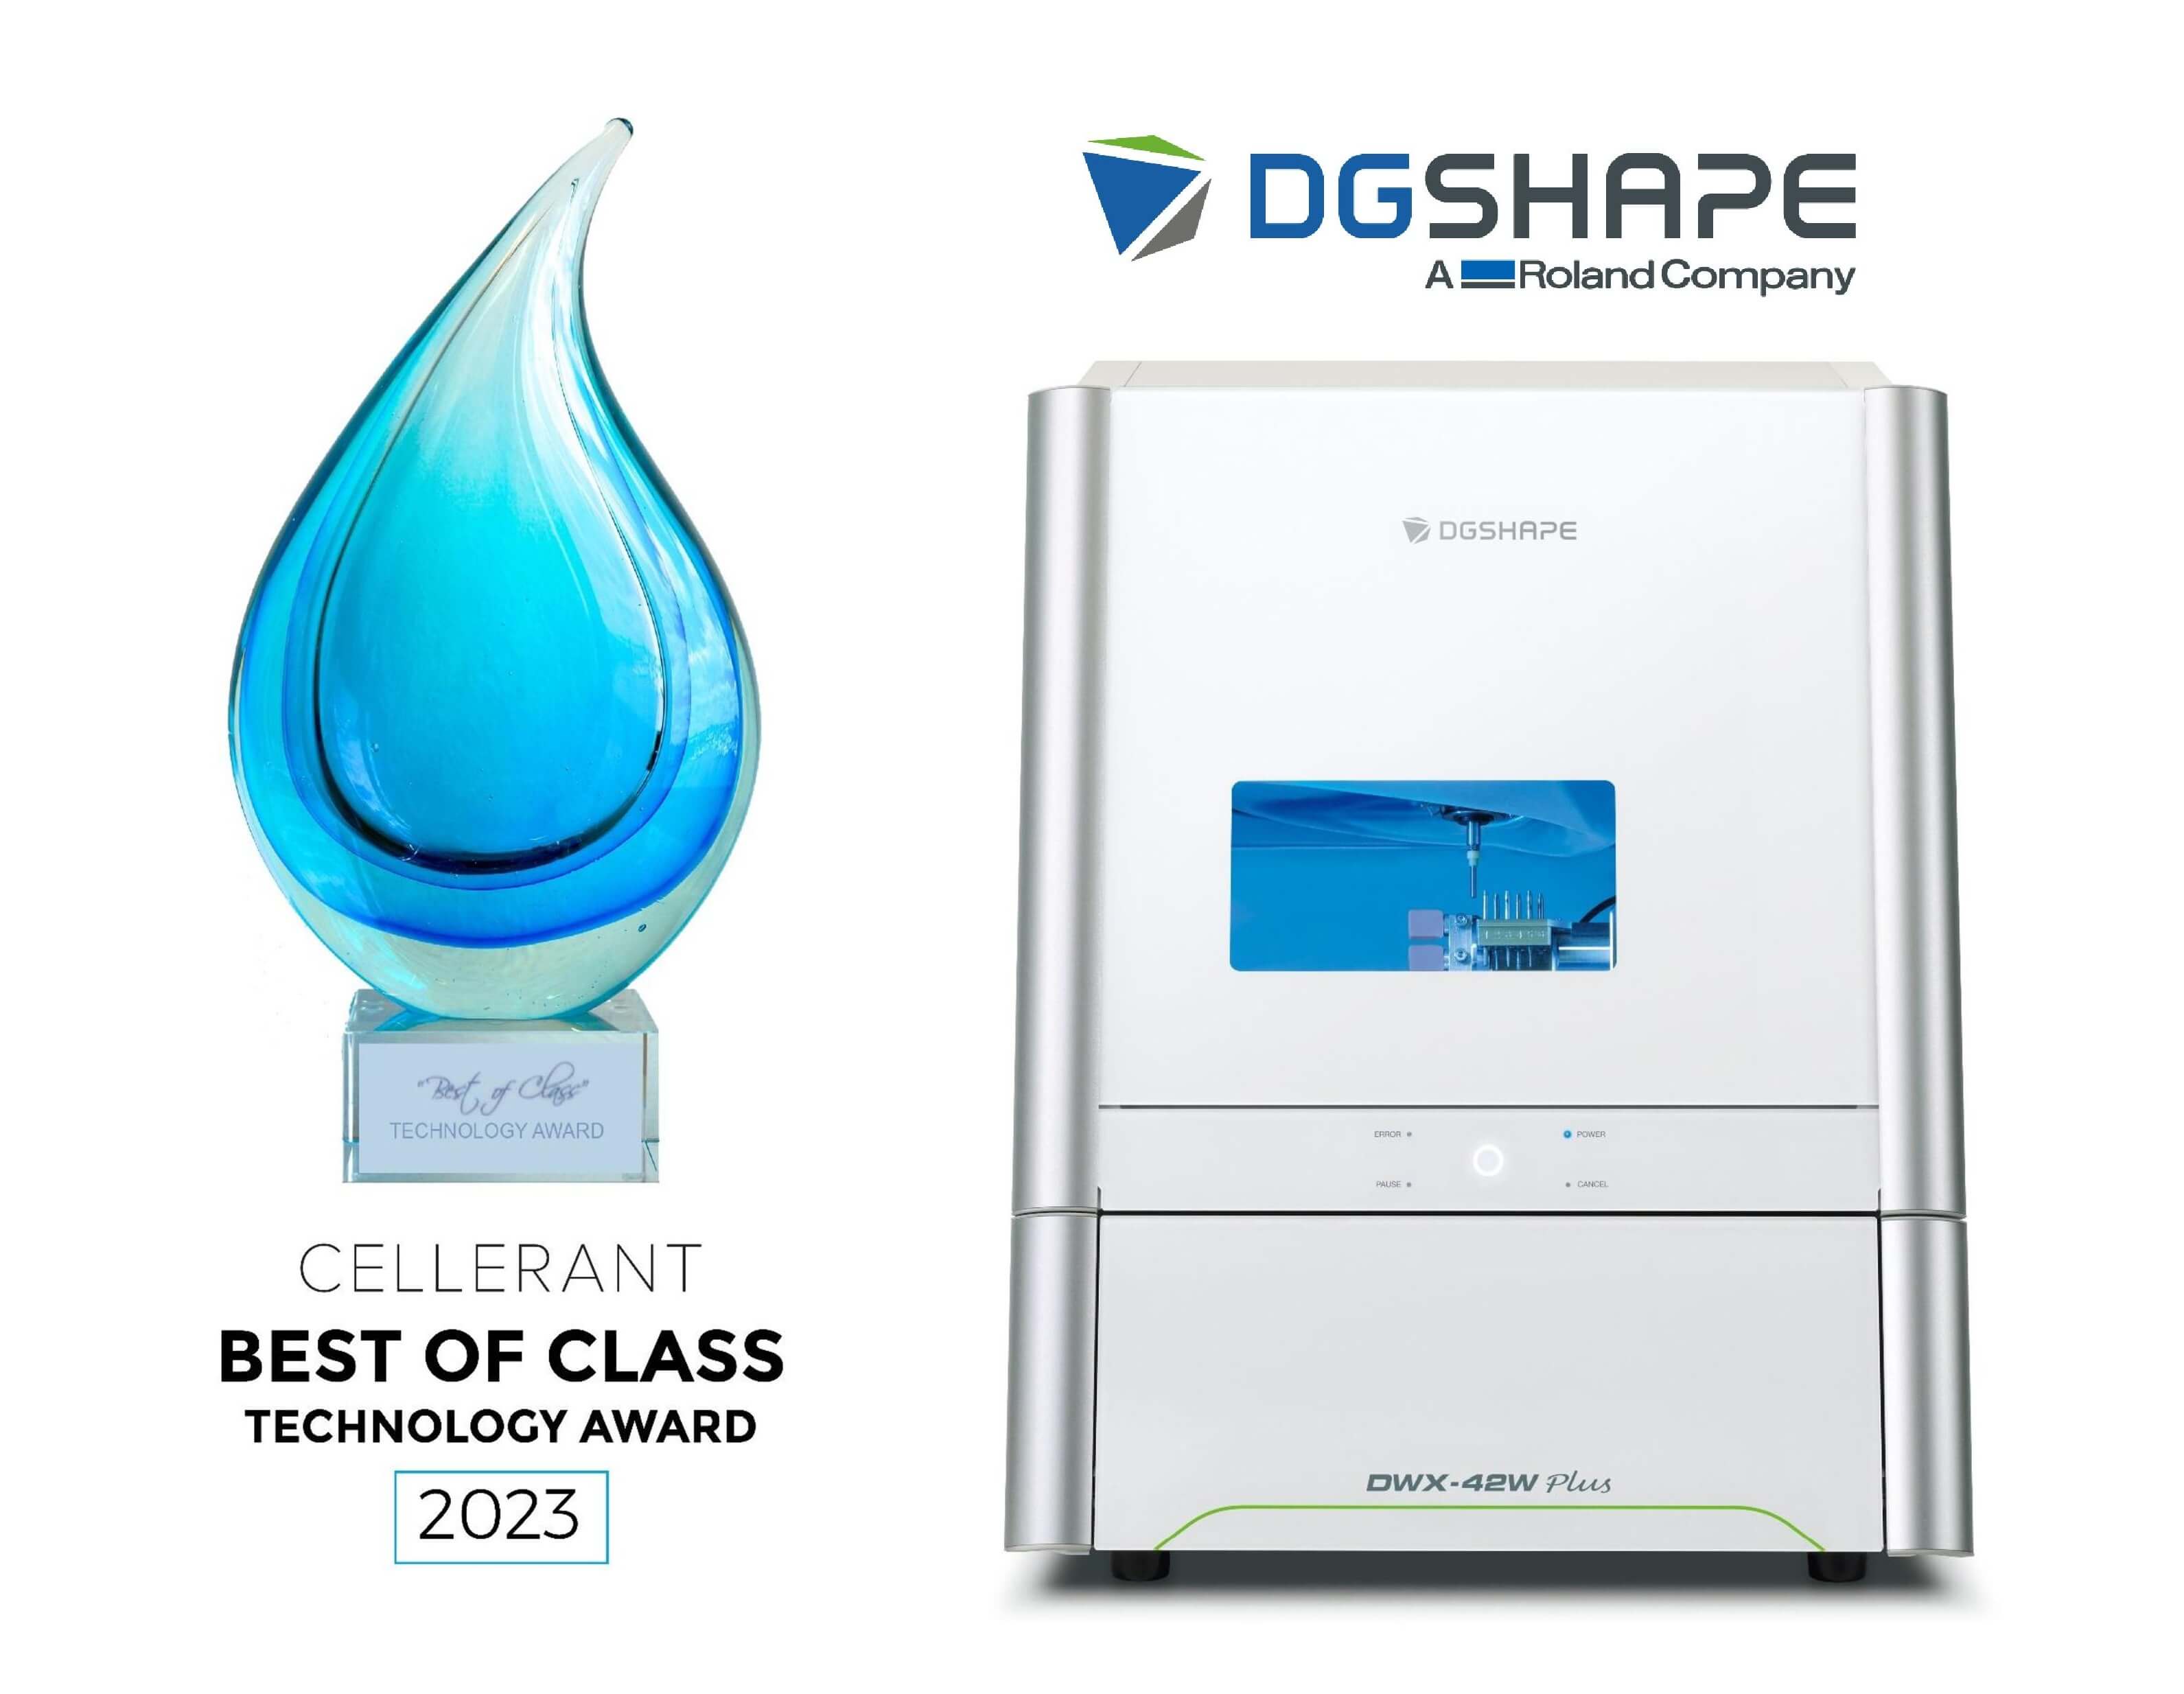 Imagen de la Solución de Fresado para Consultorio DGSHAPE DWX-42W de Roland DGA, Ganadora del Premio Cellerant 2023 al Mejor de su Clase en Tecnología